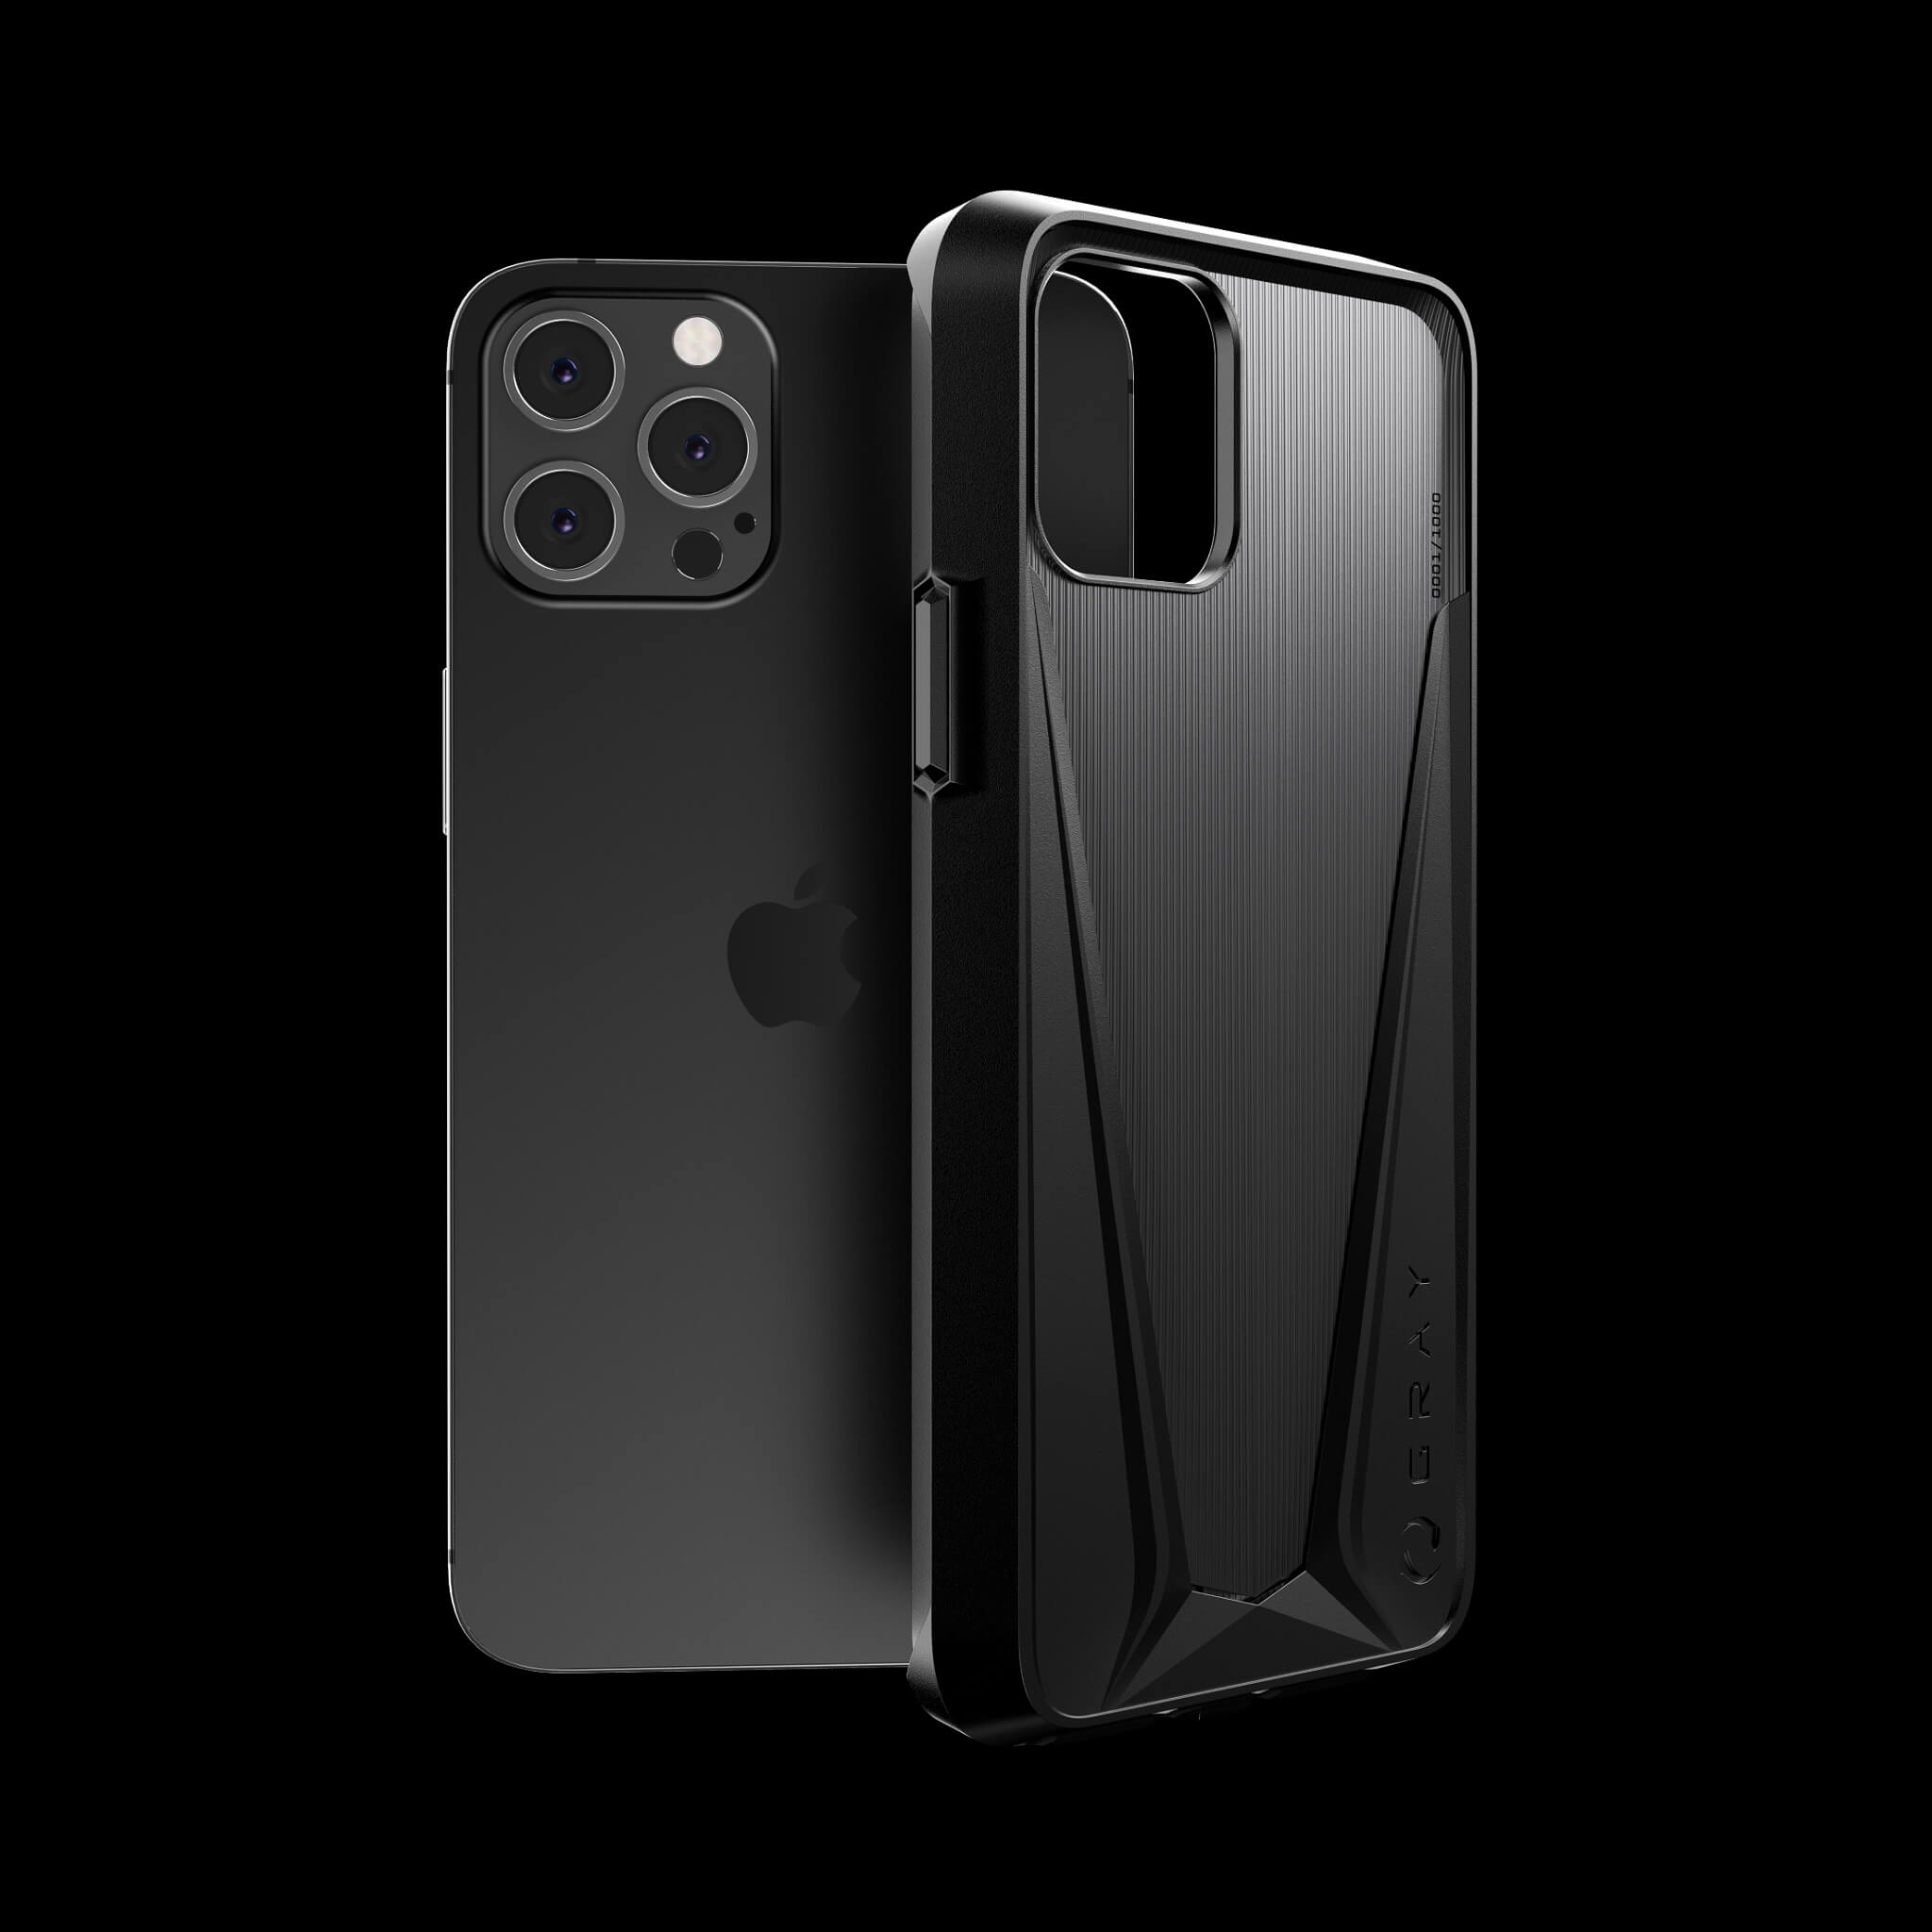 morpheus stealth black pvd titanium iPhone 12 pro case